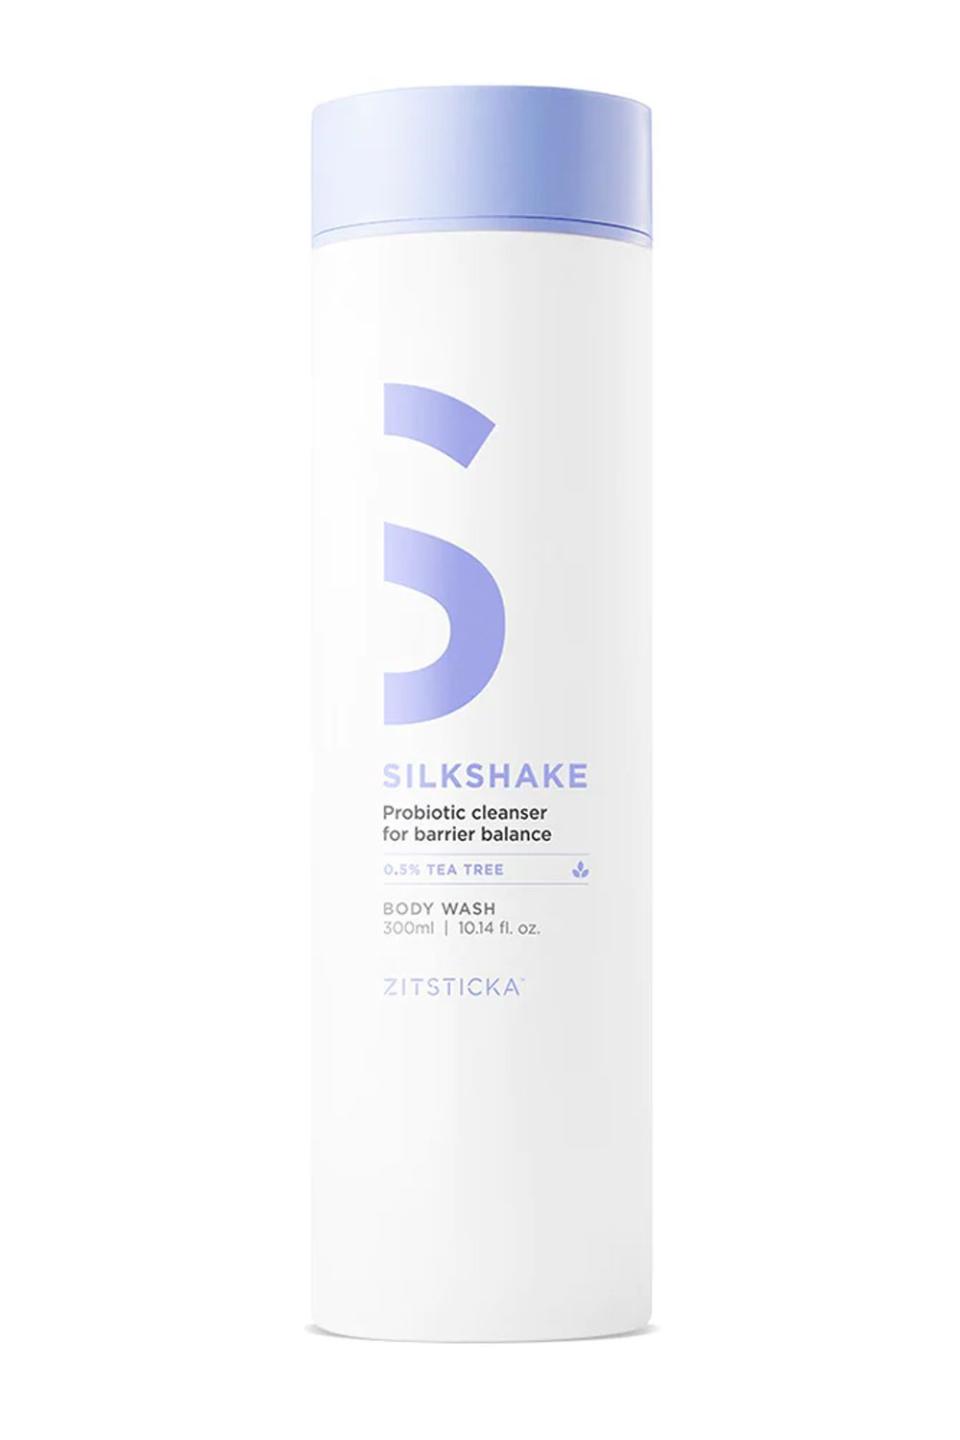 1) ZitSticka Silkshake Probiotic-Rich Cleanser for Acne-Prone Bodies